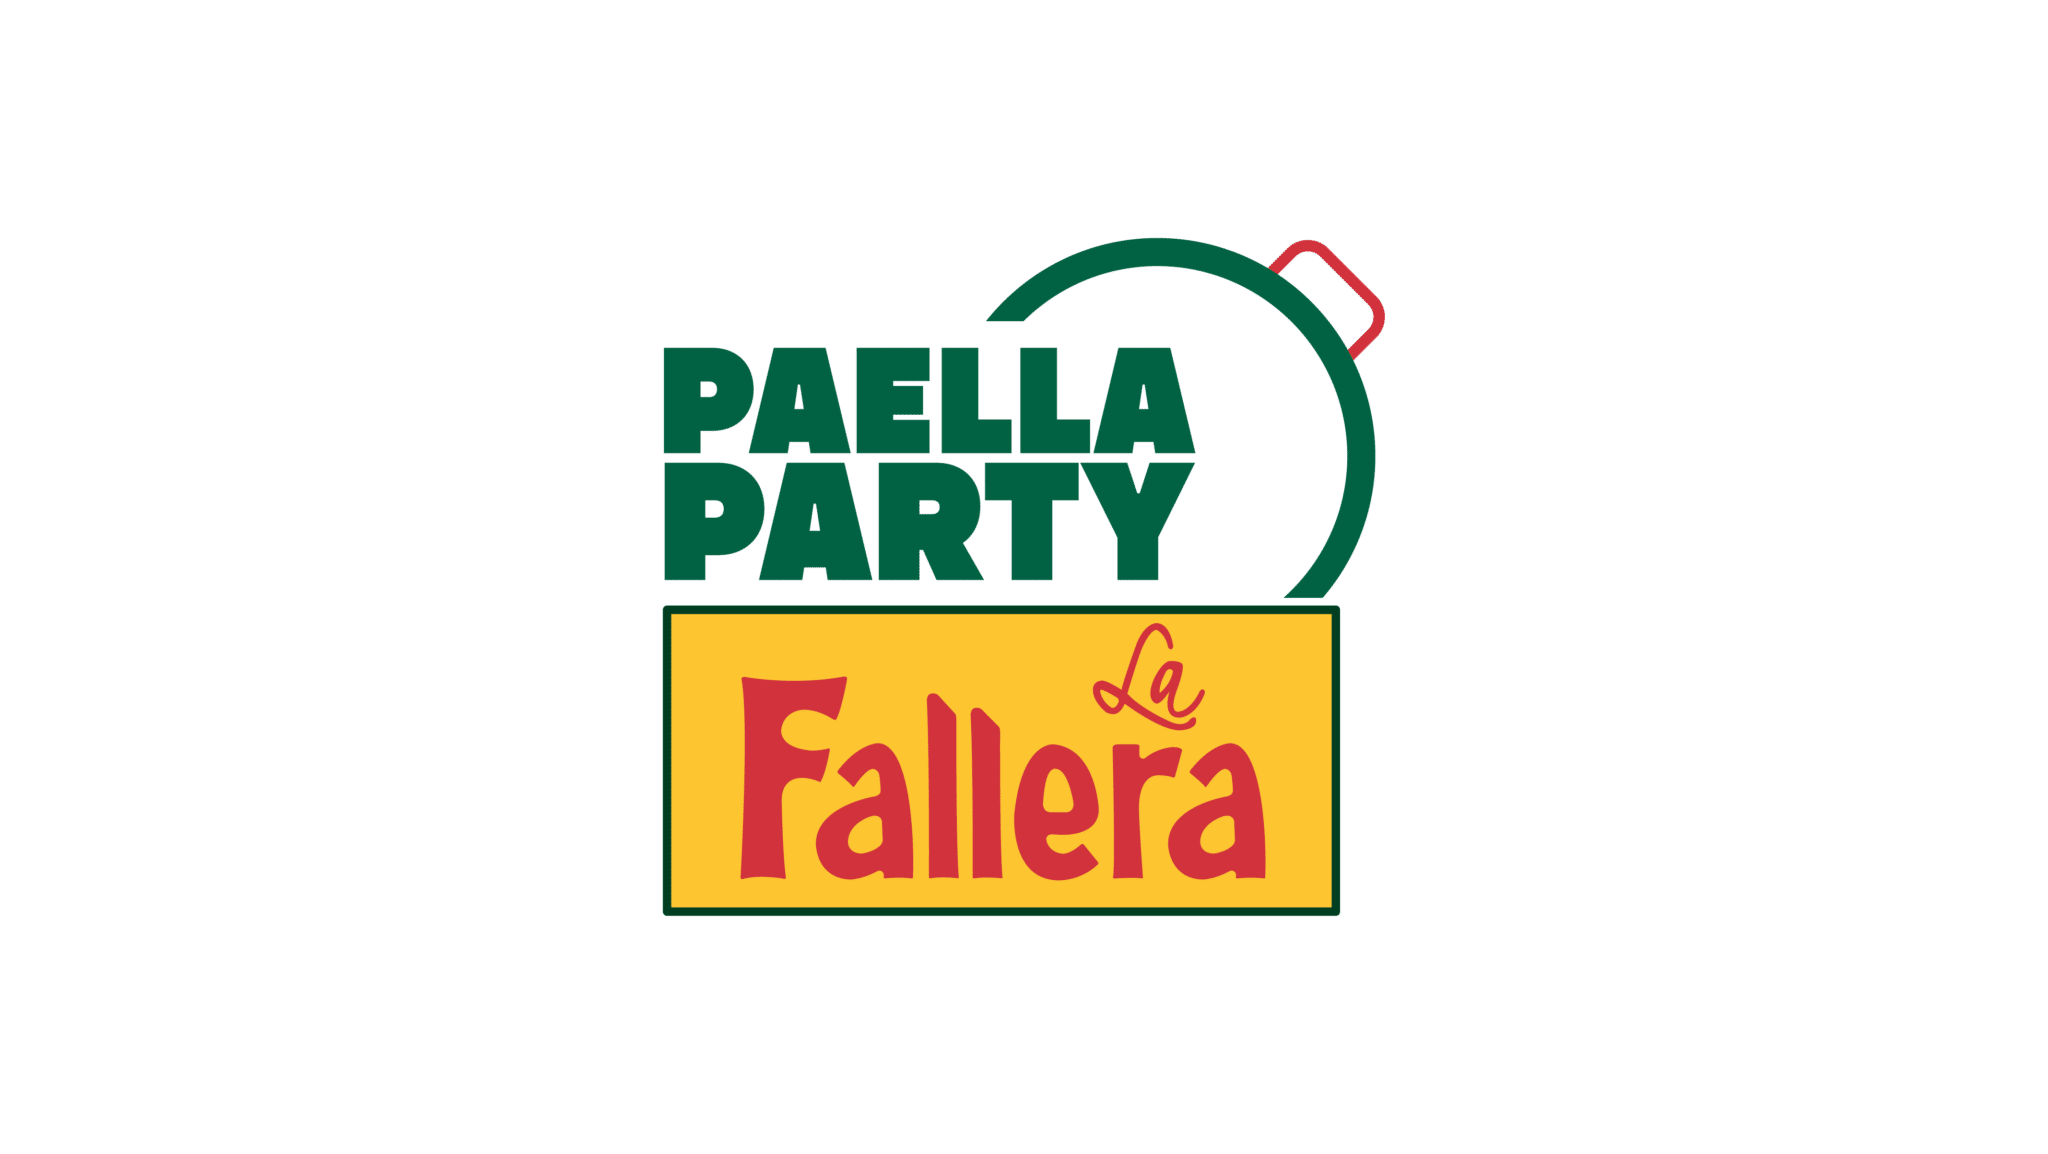 Paella Party La Fallera